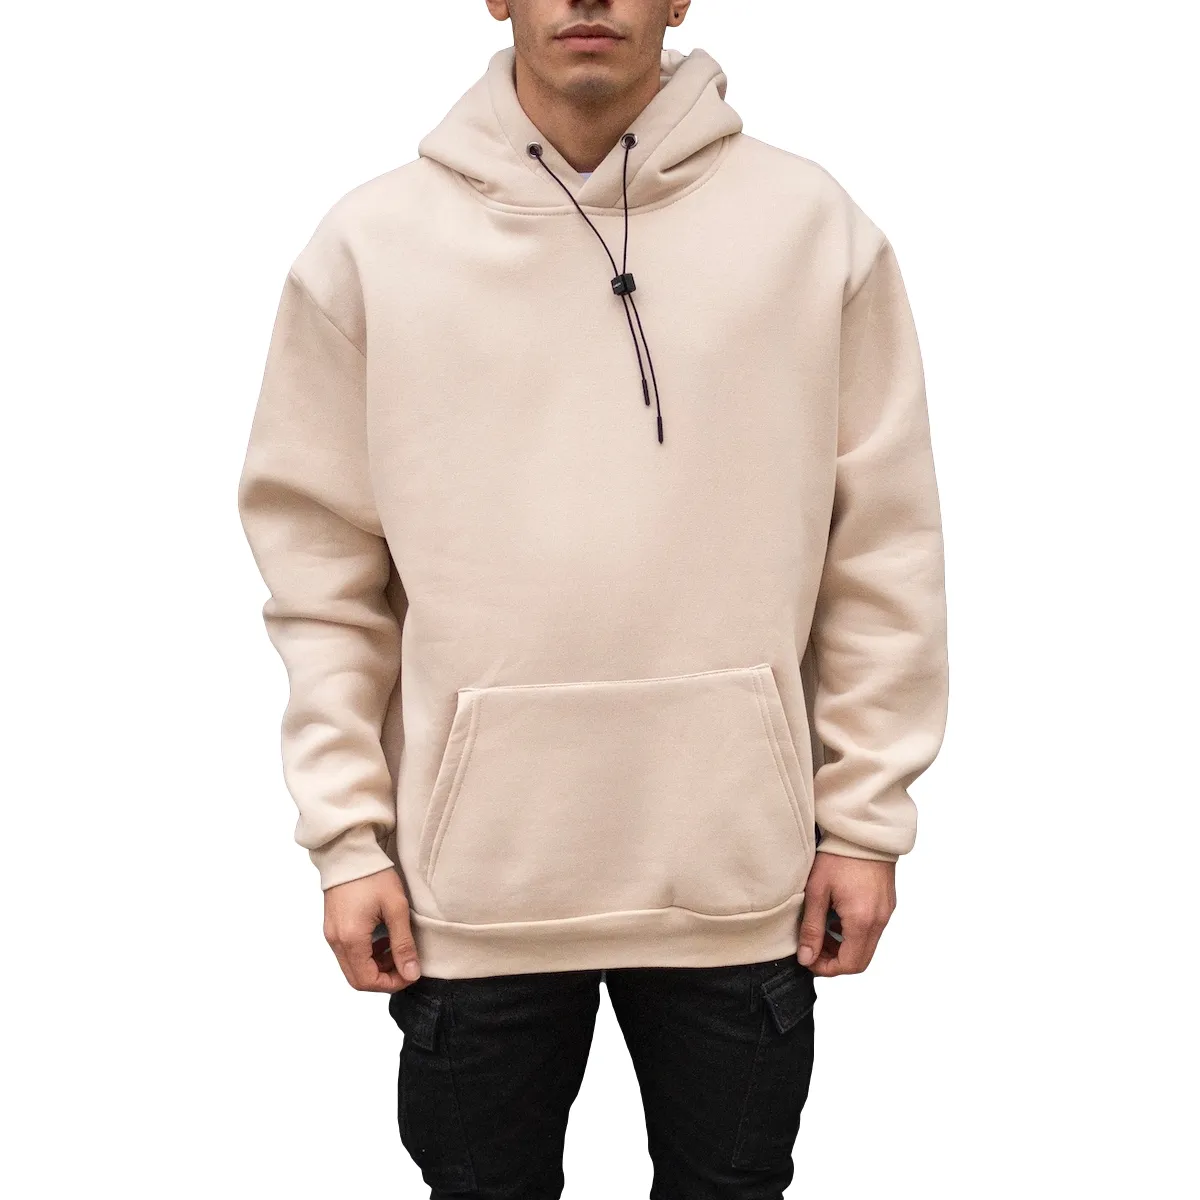 Boy % 100% pamuk erkek büyük boy temel kazak hoodie kanguru yeni stil iyi en iyi fiyat toptan teklif trend 2020